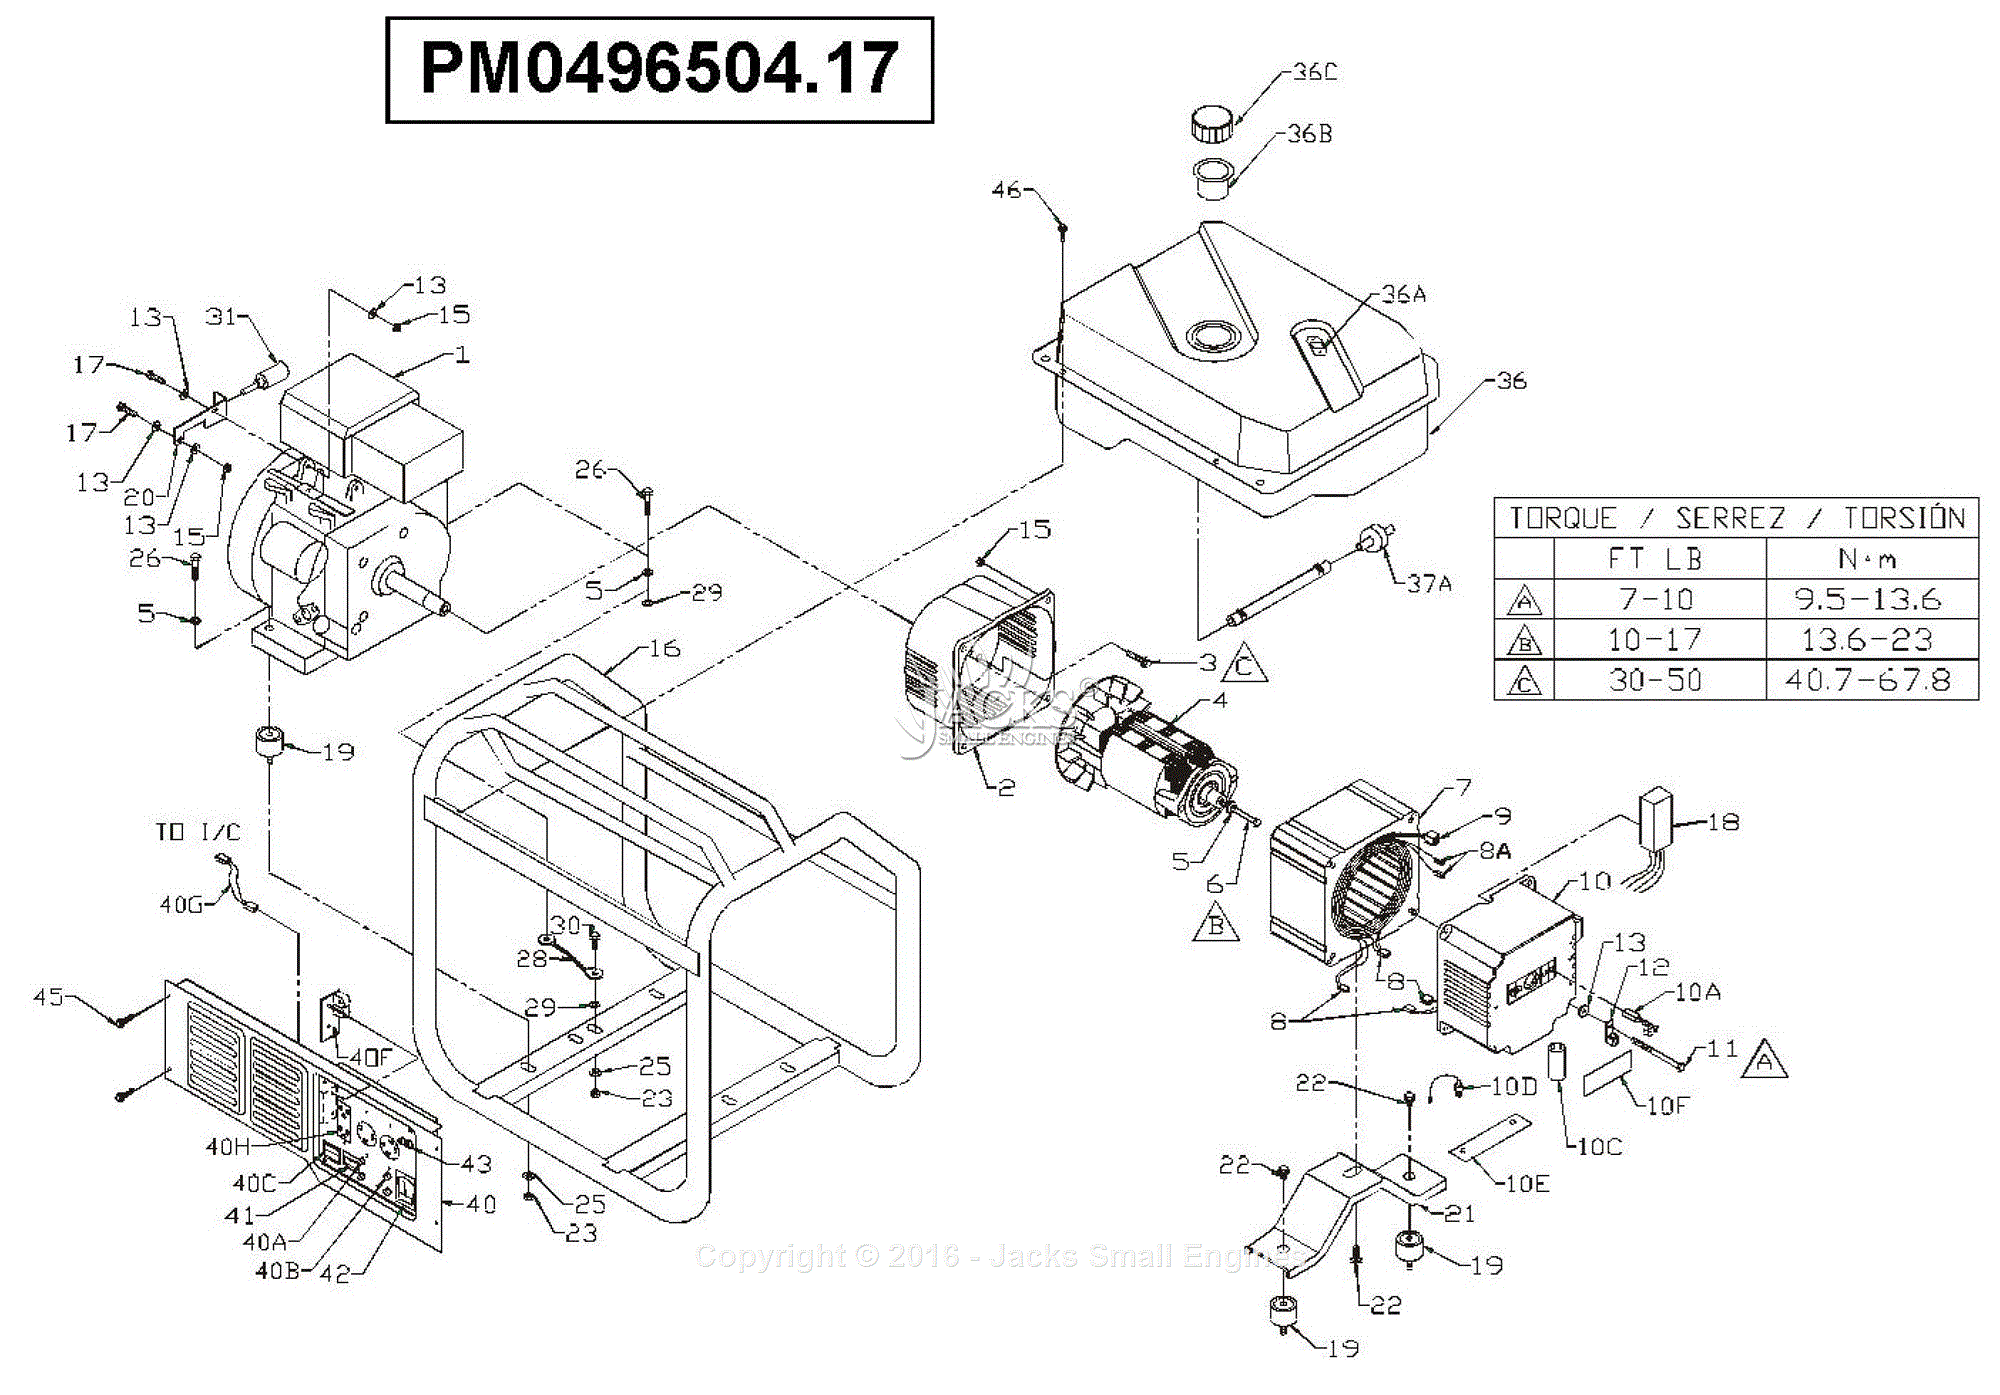 Powermate Carburetor w/ Solenoid PM0496504 PM0496504.17 PM0496504.18 Generator 